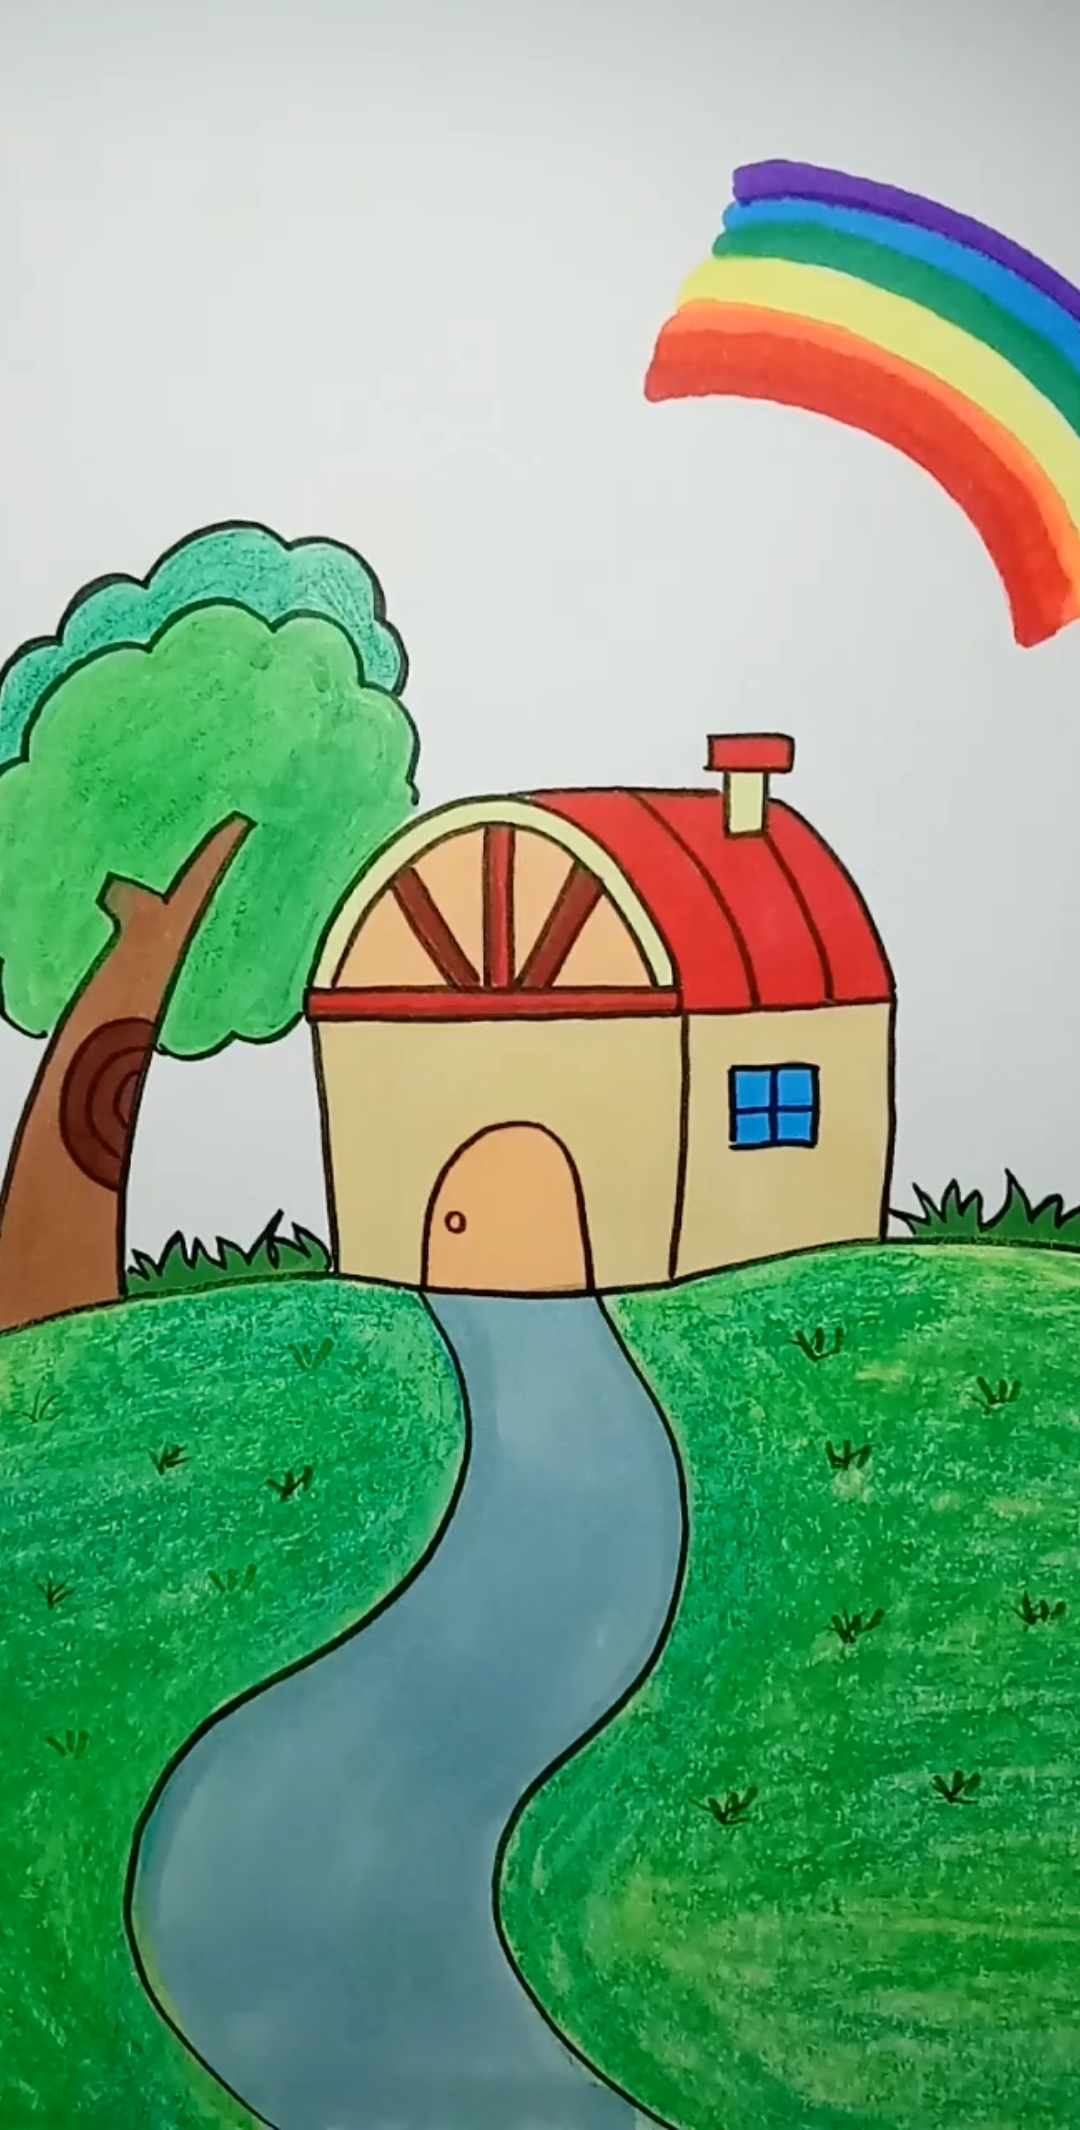 二年级画房子 涂上图片